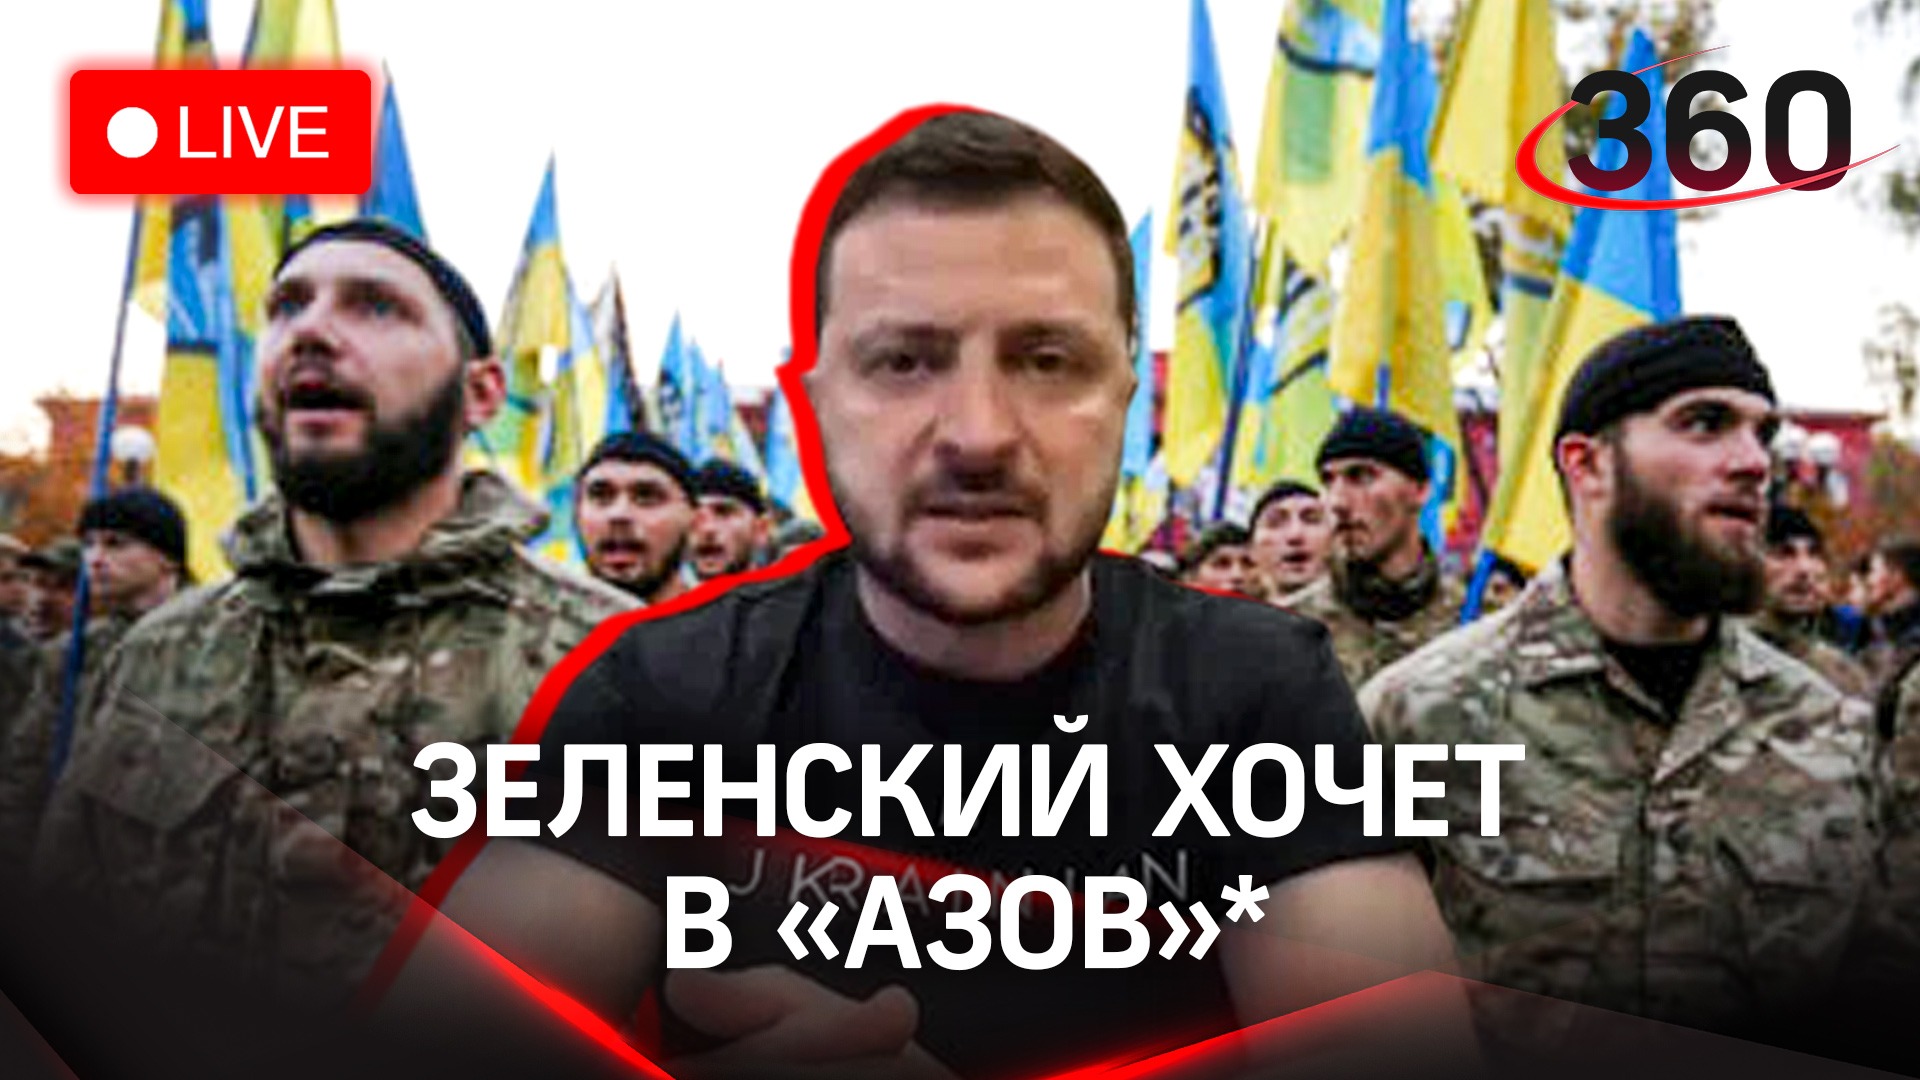 Зеленский возродит батальон "Азов*" /Обстрел школы в Донецке /Медведев обещает удар, но не по Киеву